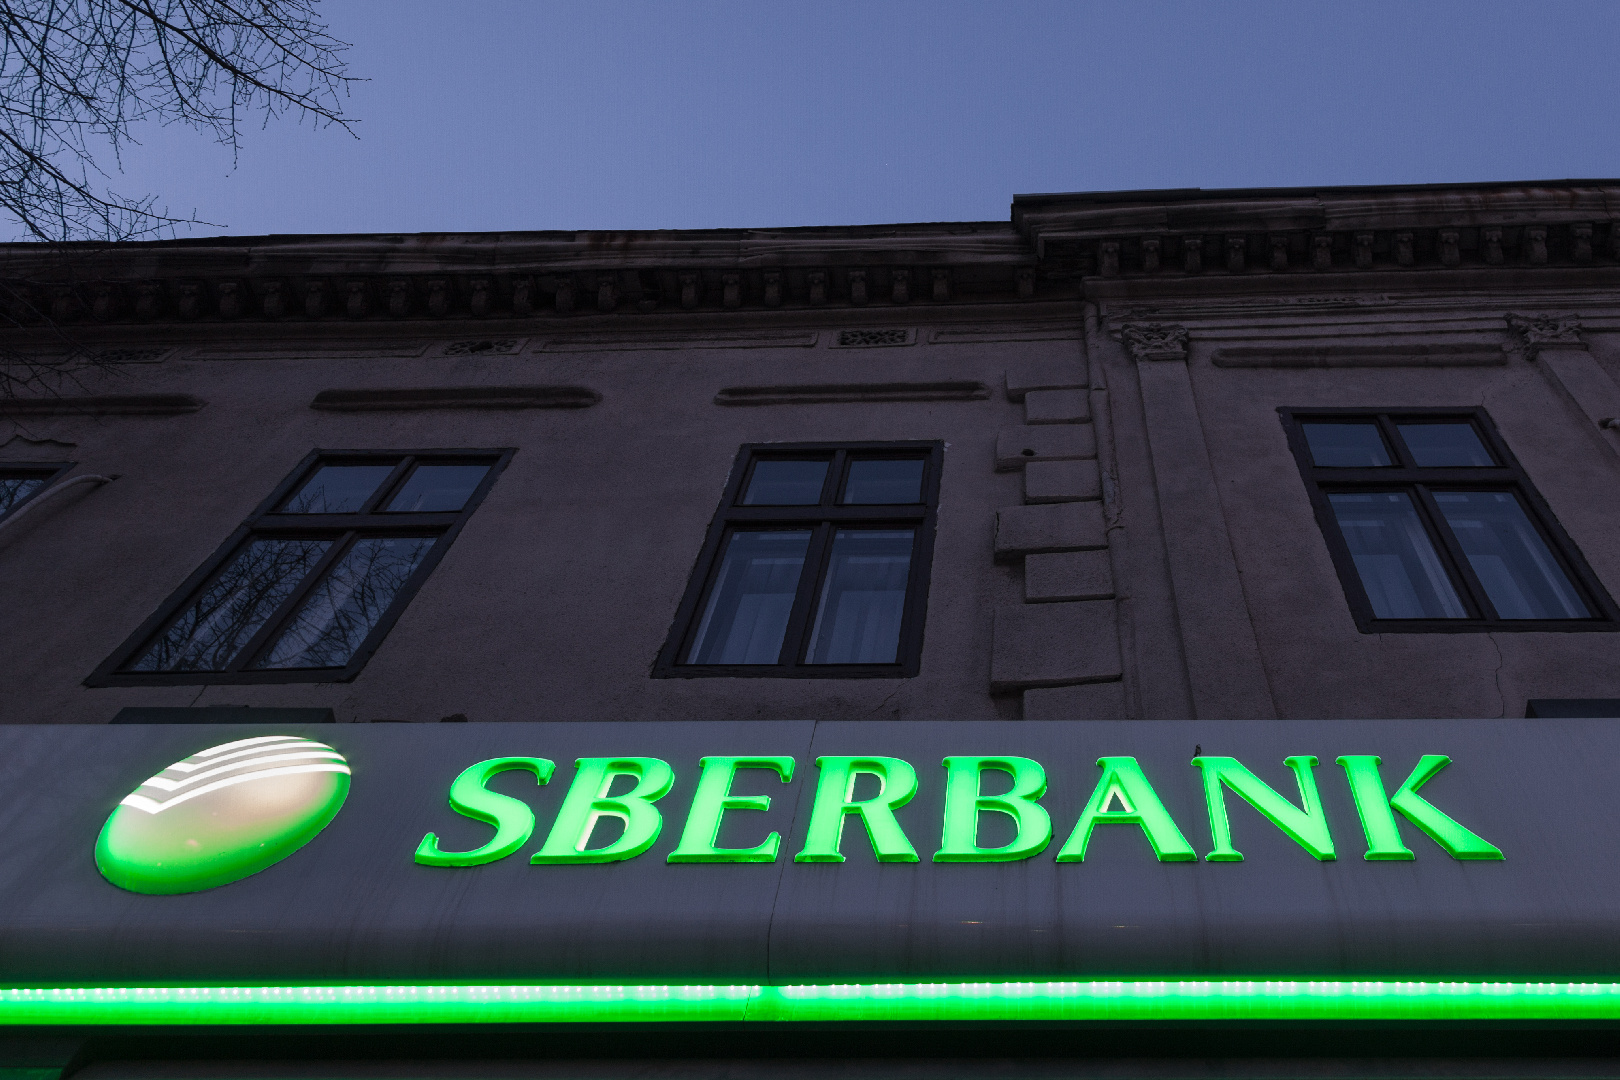 Сбербанк Санкт-Петербурга - отделения, адрес, телефон, услуги Сбербанка в Питере